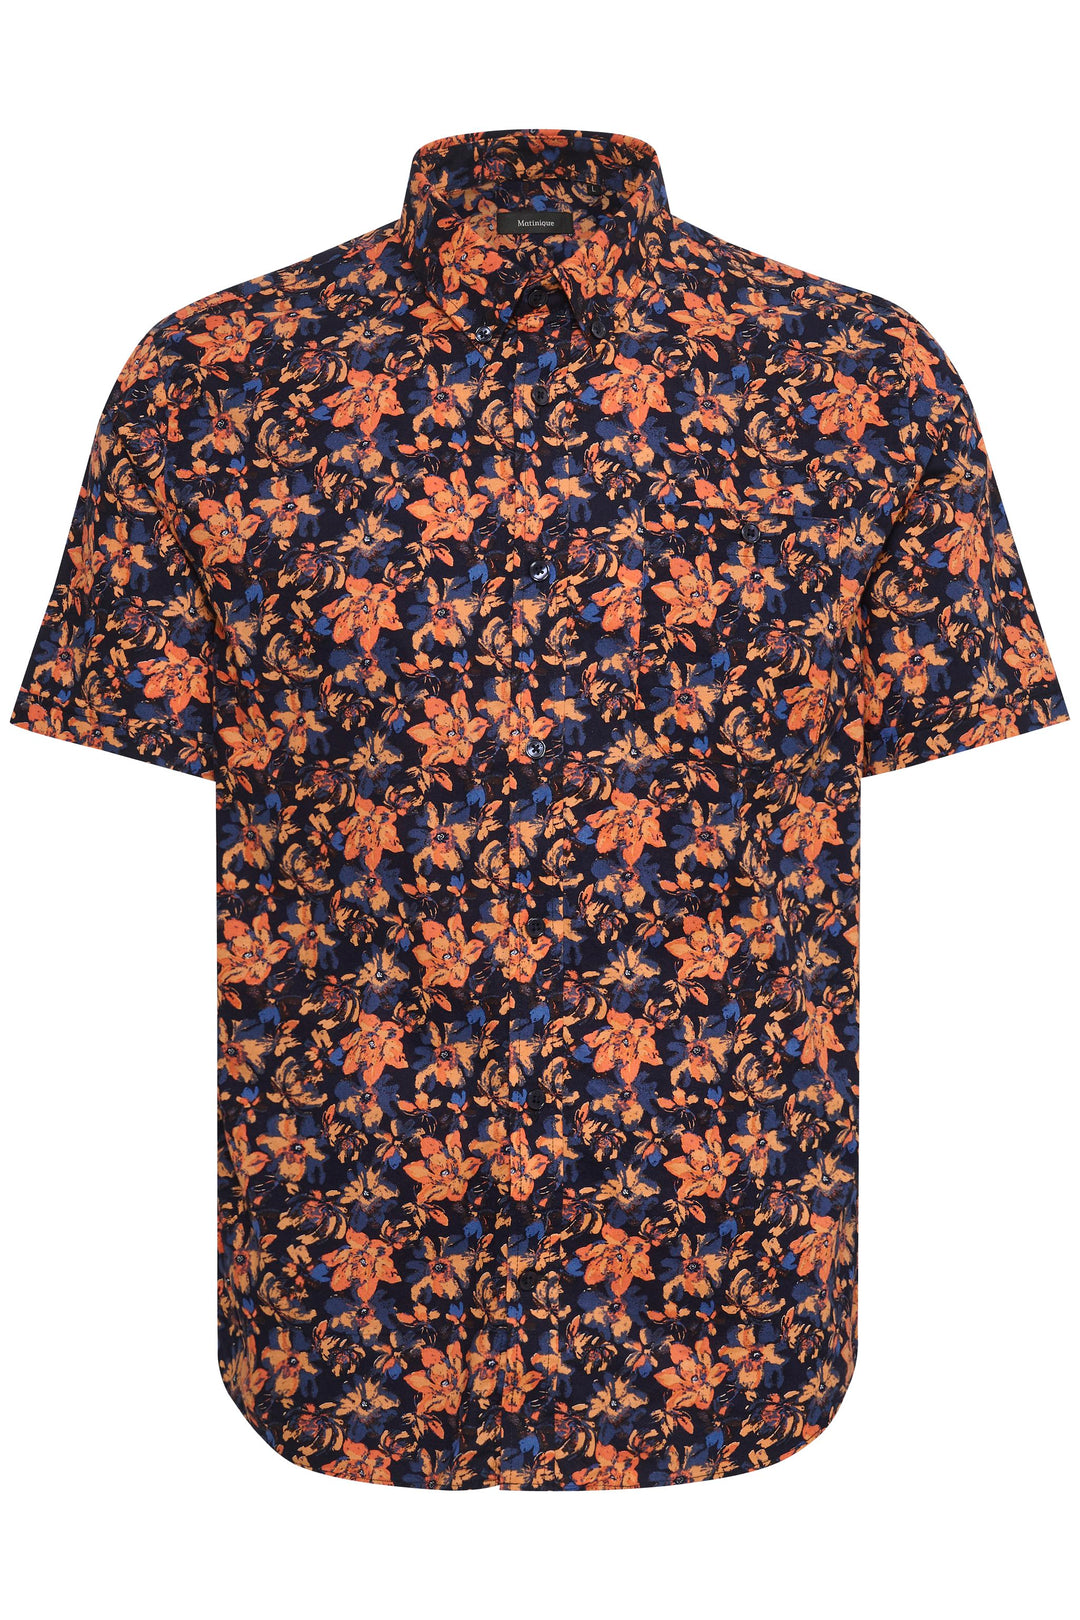 Matinique Floral Print Shirt Navy - Urban Menswear